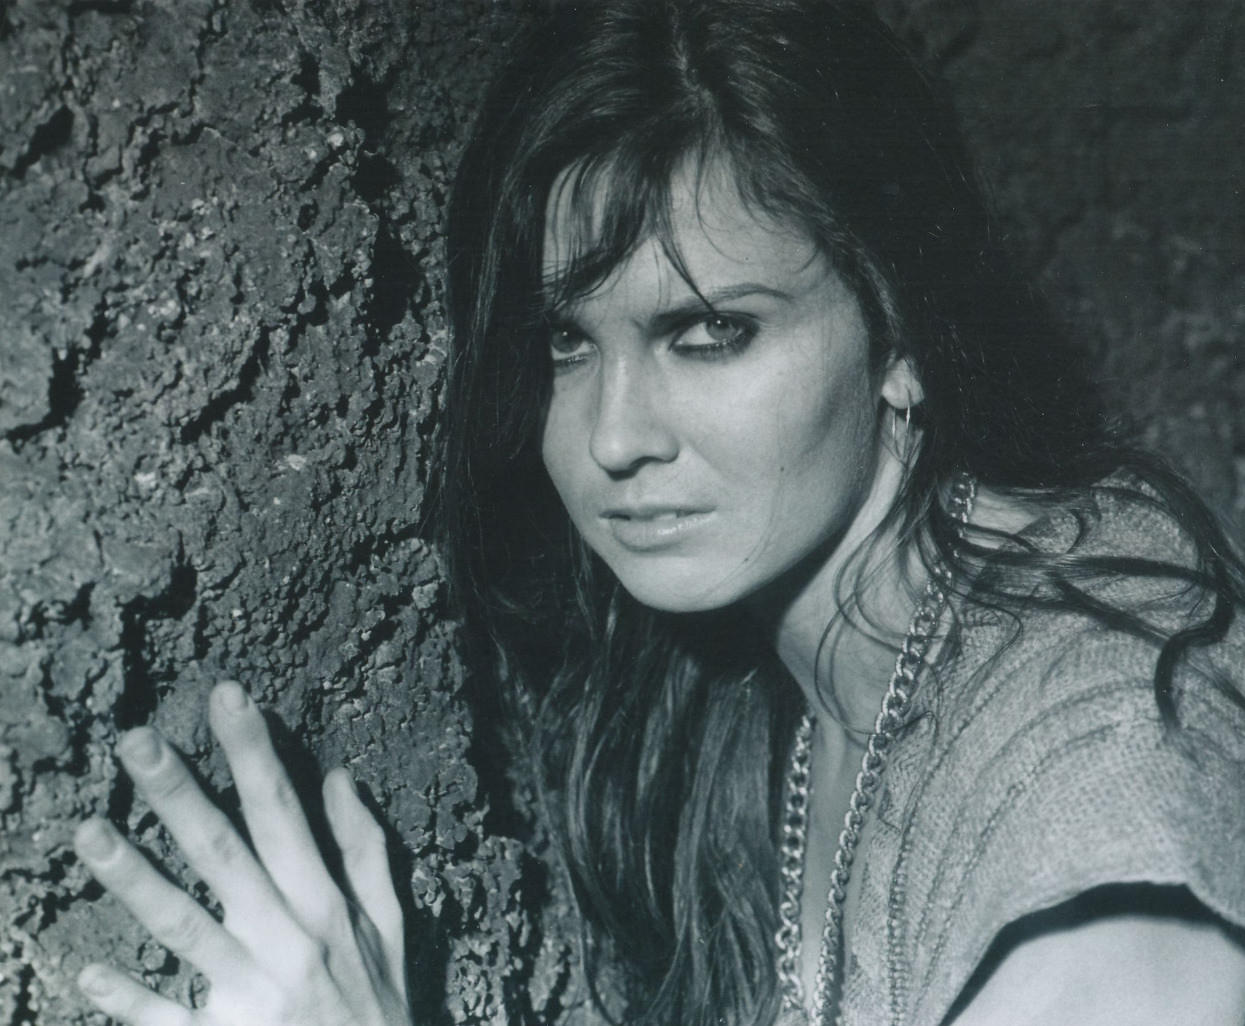 Caroline Munor in movie 'At the Earth's Core', 1976